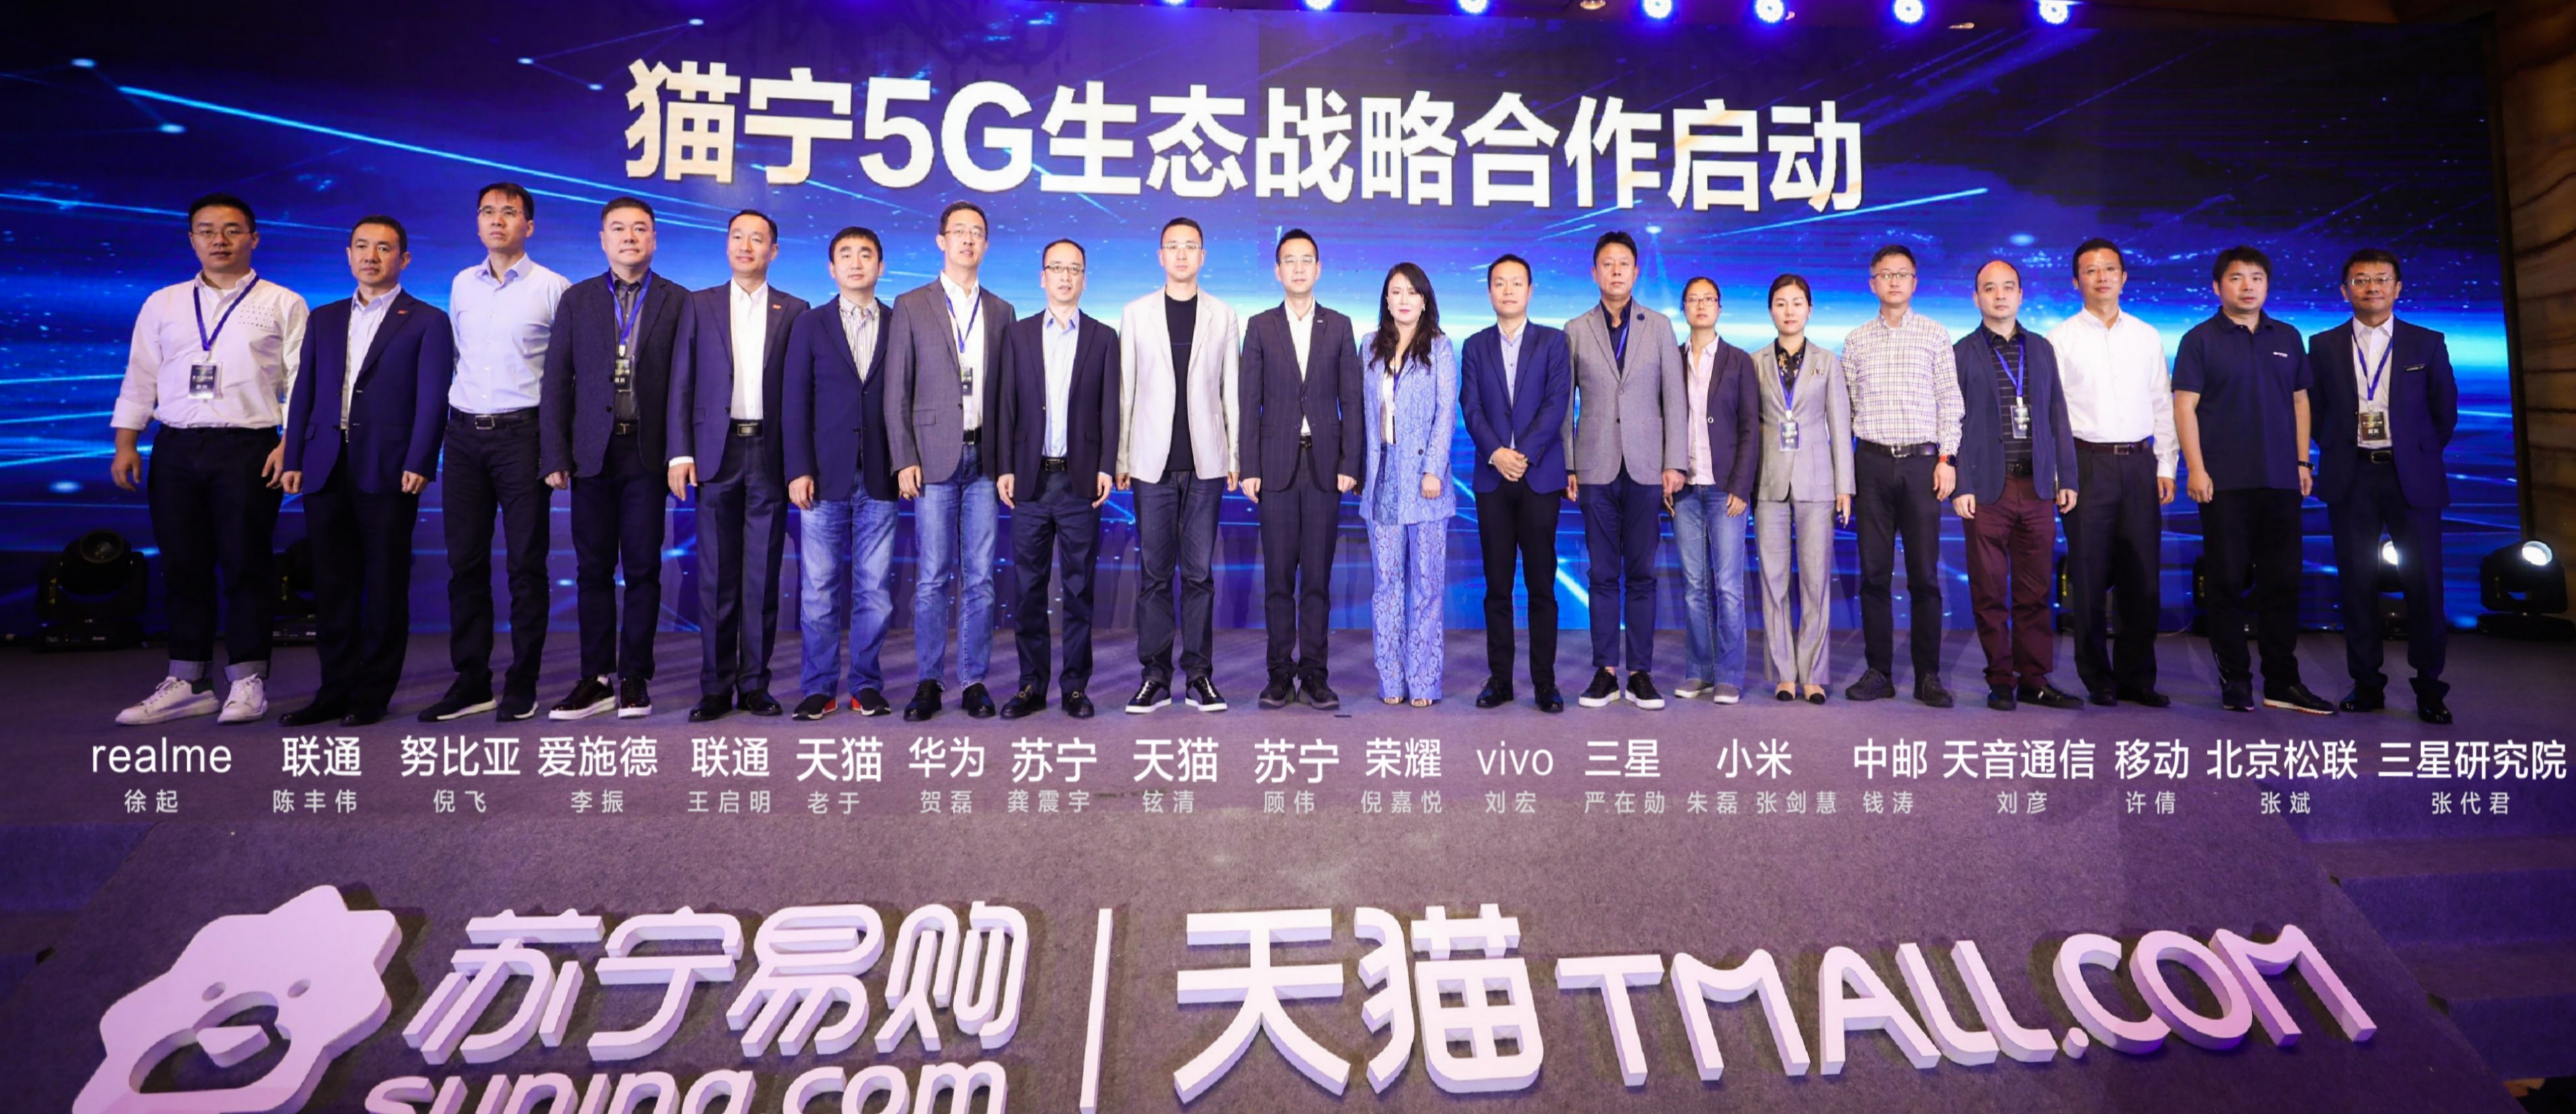 双11天猫苏宁抛出500亿采购大单 打造5G第一平台